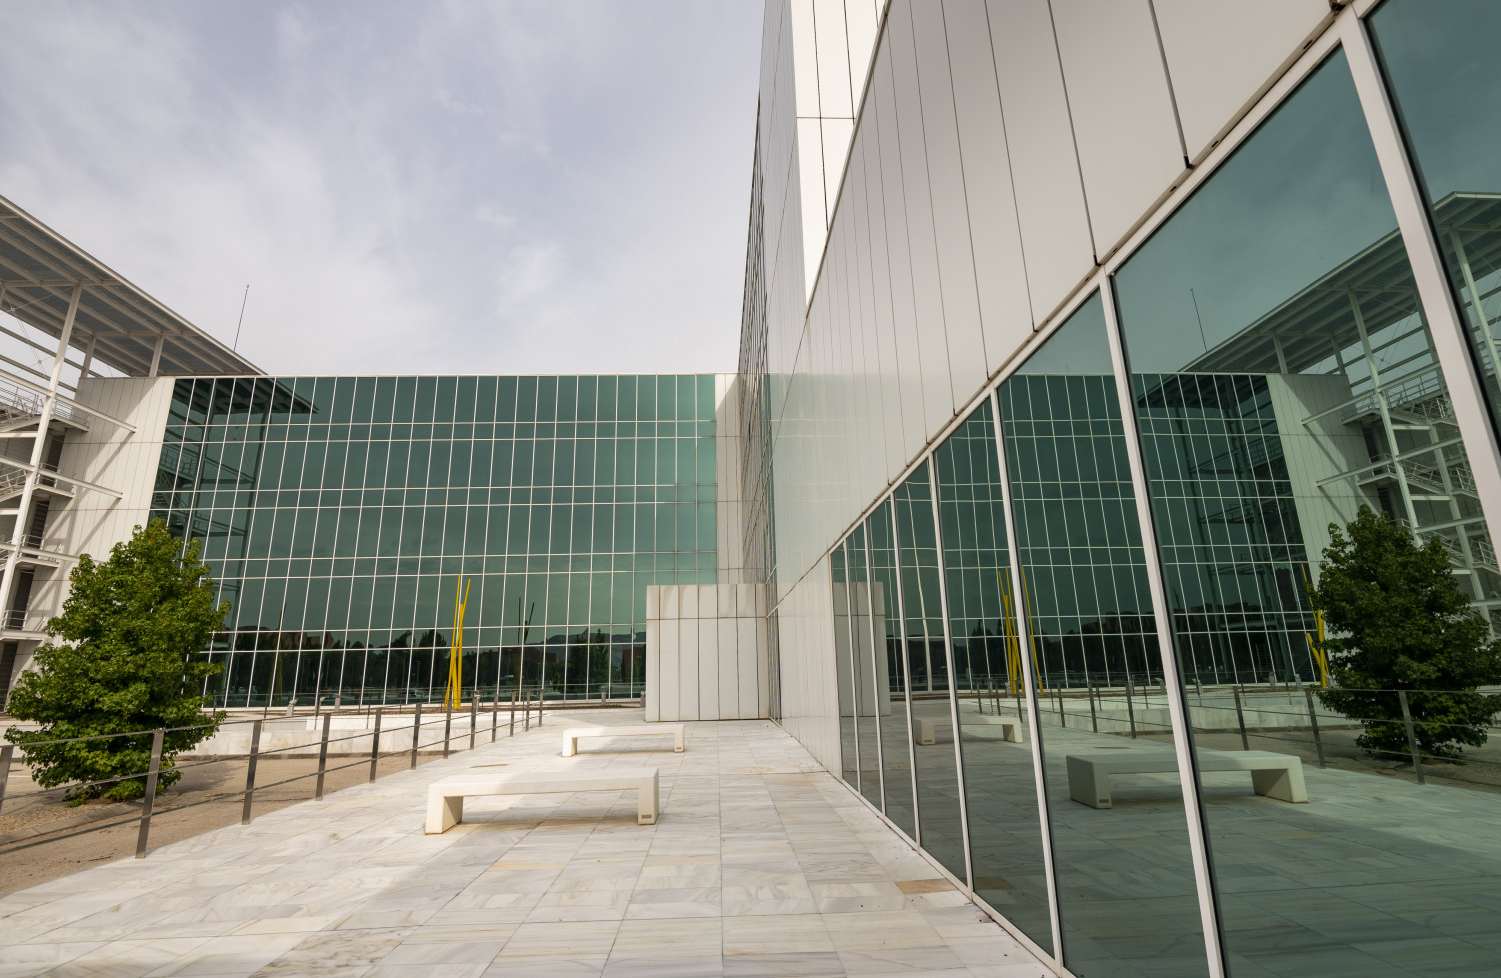 El CINC se ubica en el Centro de Investigaciones Interdisciplinares del Campus CientÃfico de la Universidad de AlcalÃ¡ (UAH).